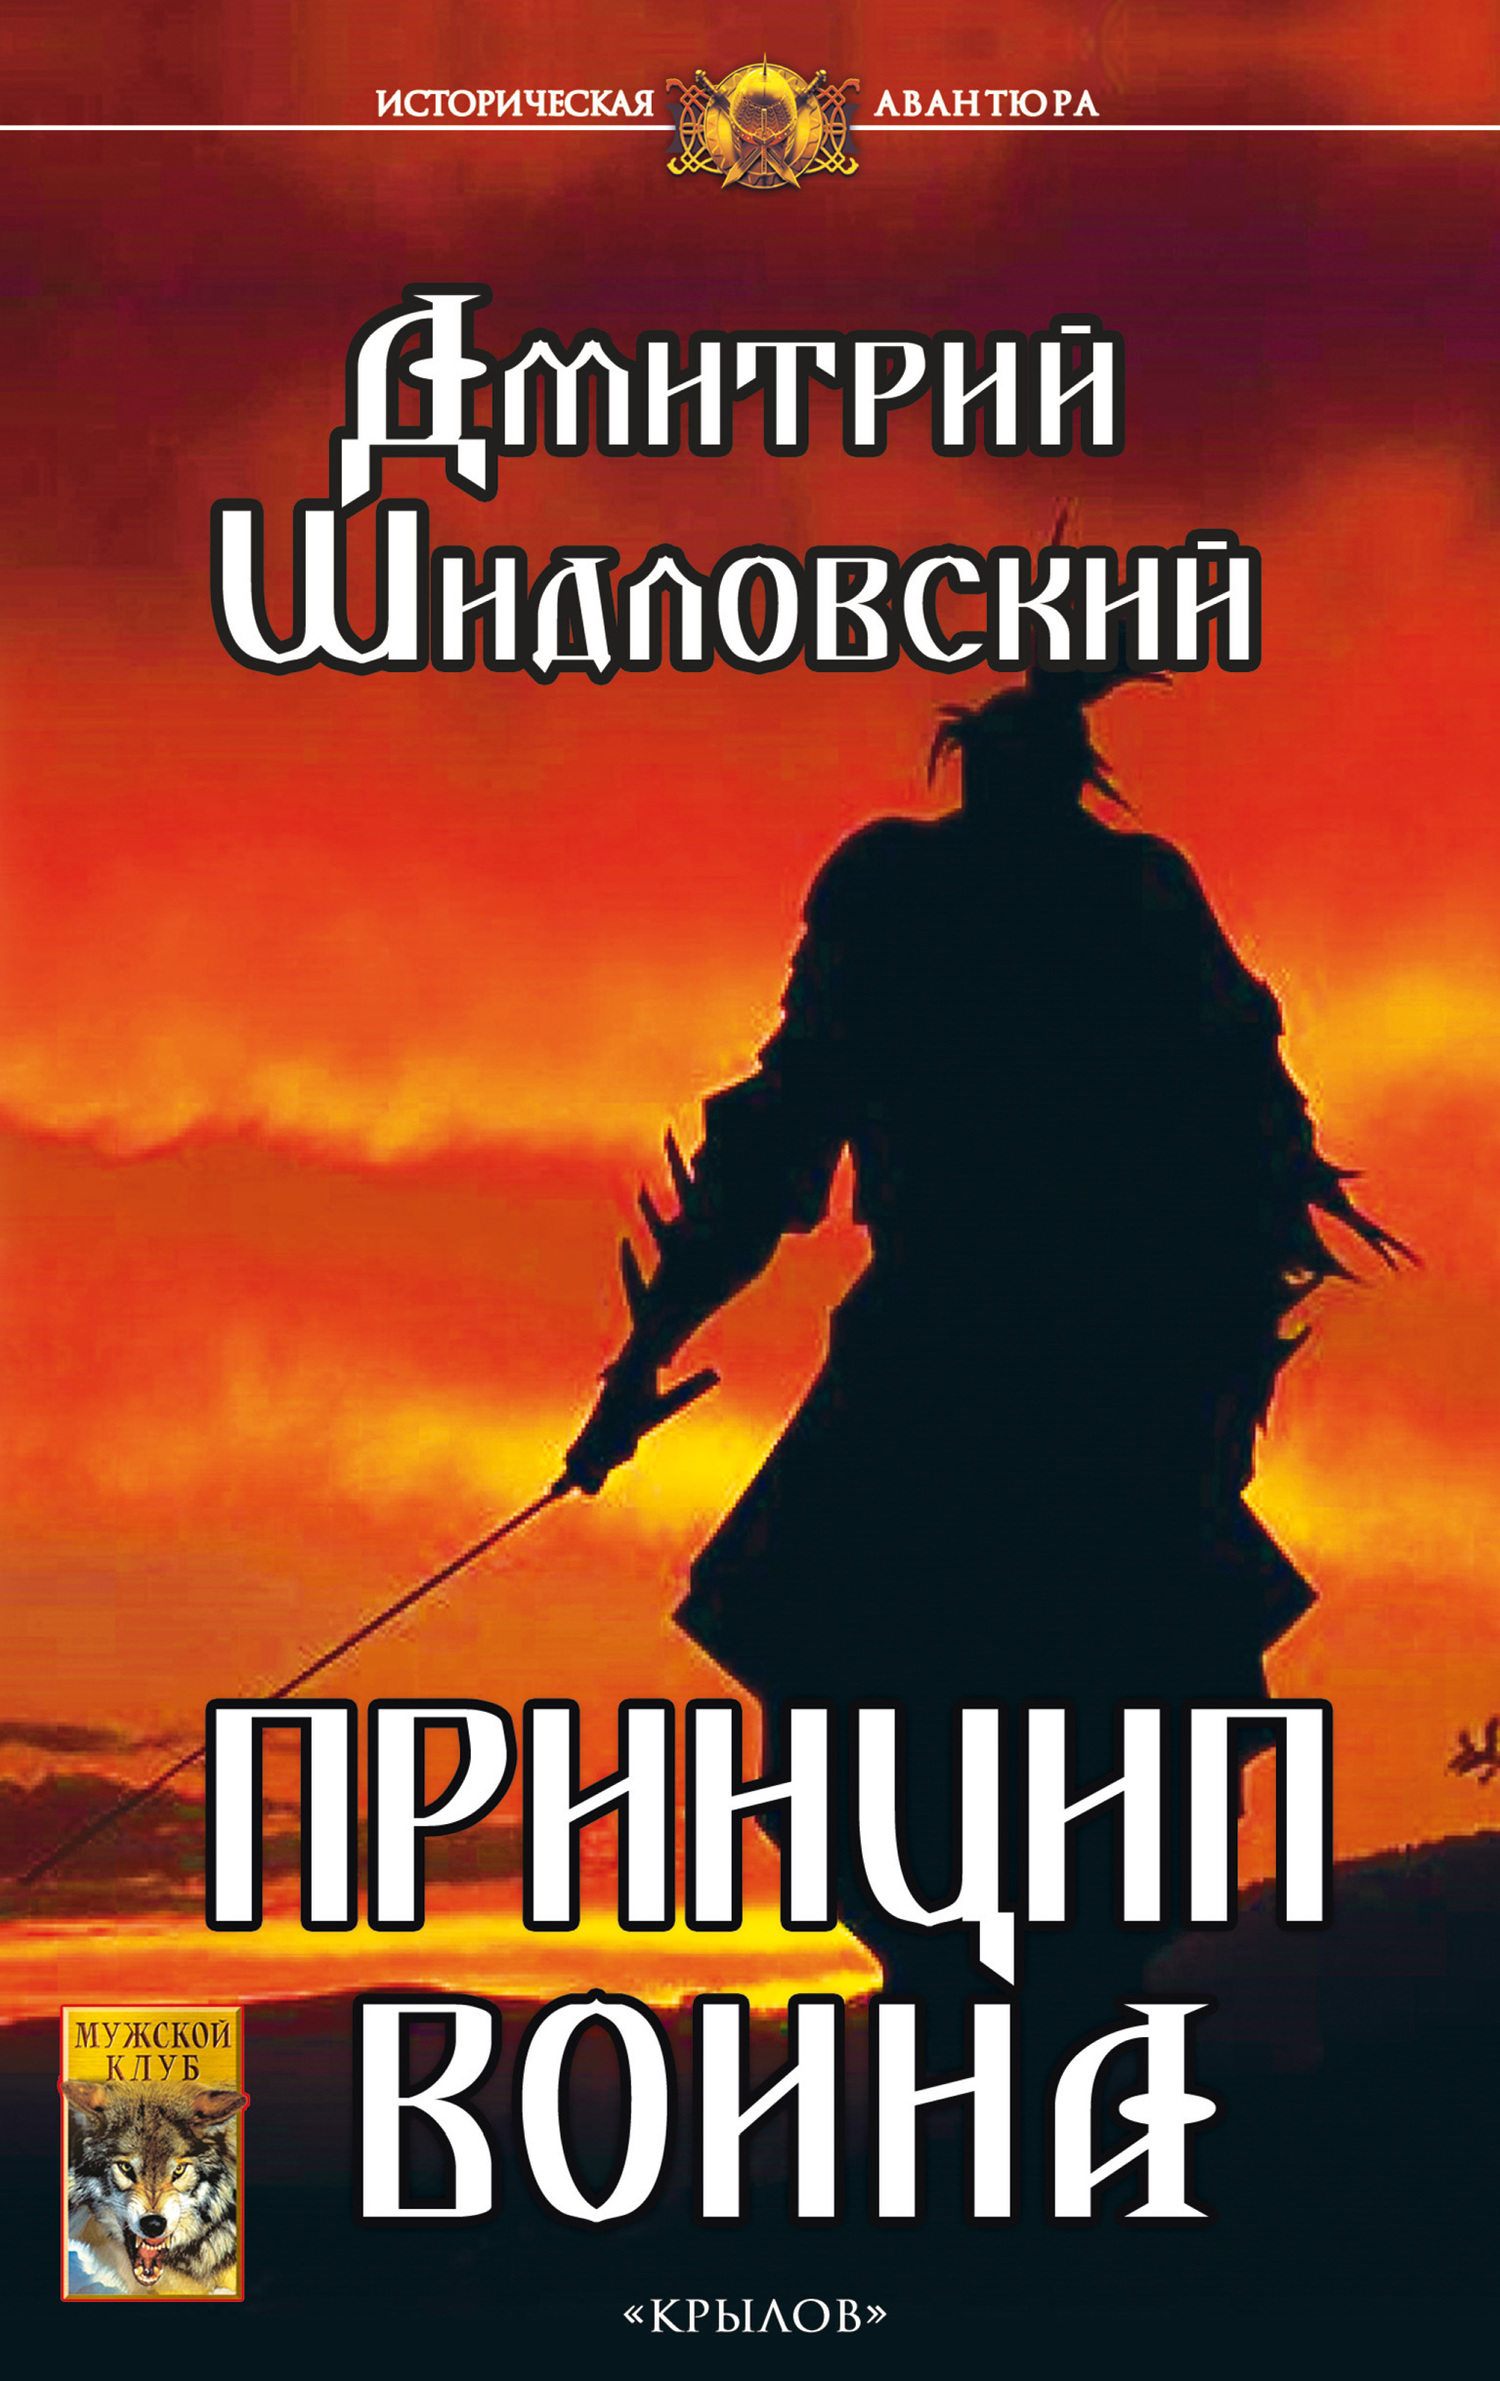 Шидловский Дмитрий - Принцип воина скачать бесплатно